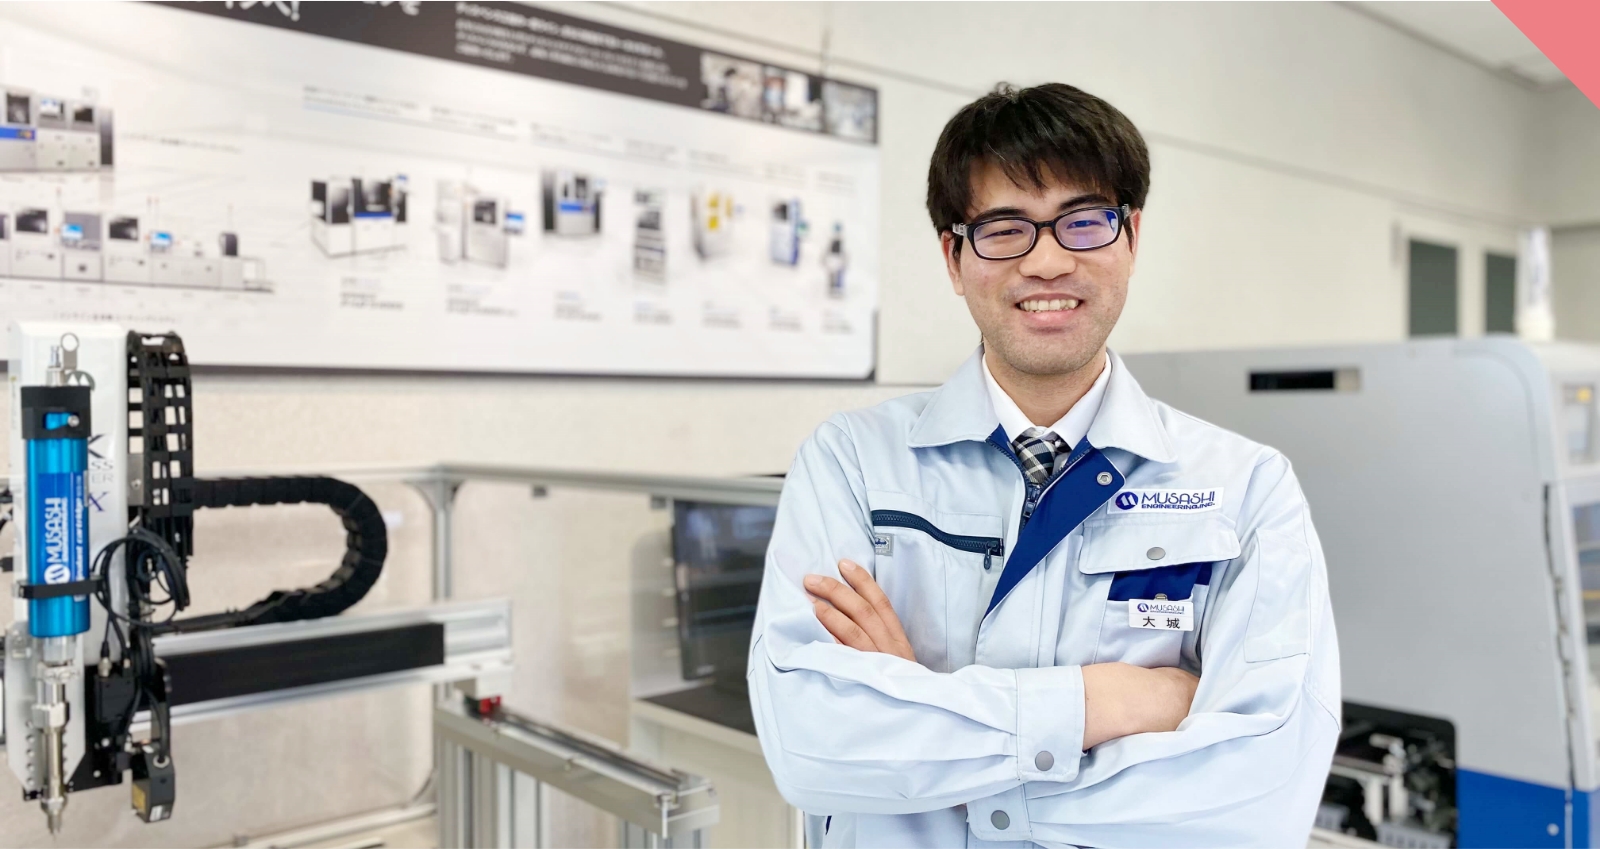 Anh O tham gia công nghệ sản xuất với tư cách là sinh viên mới ra trường năm 2019